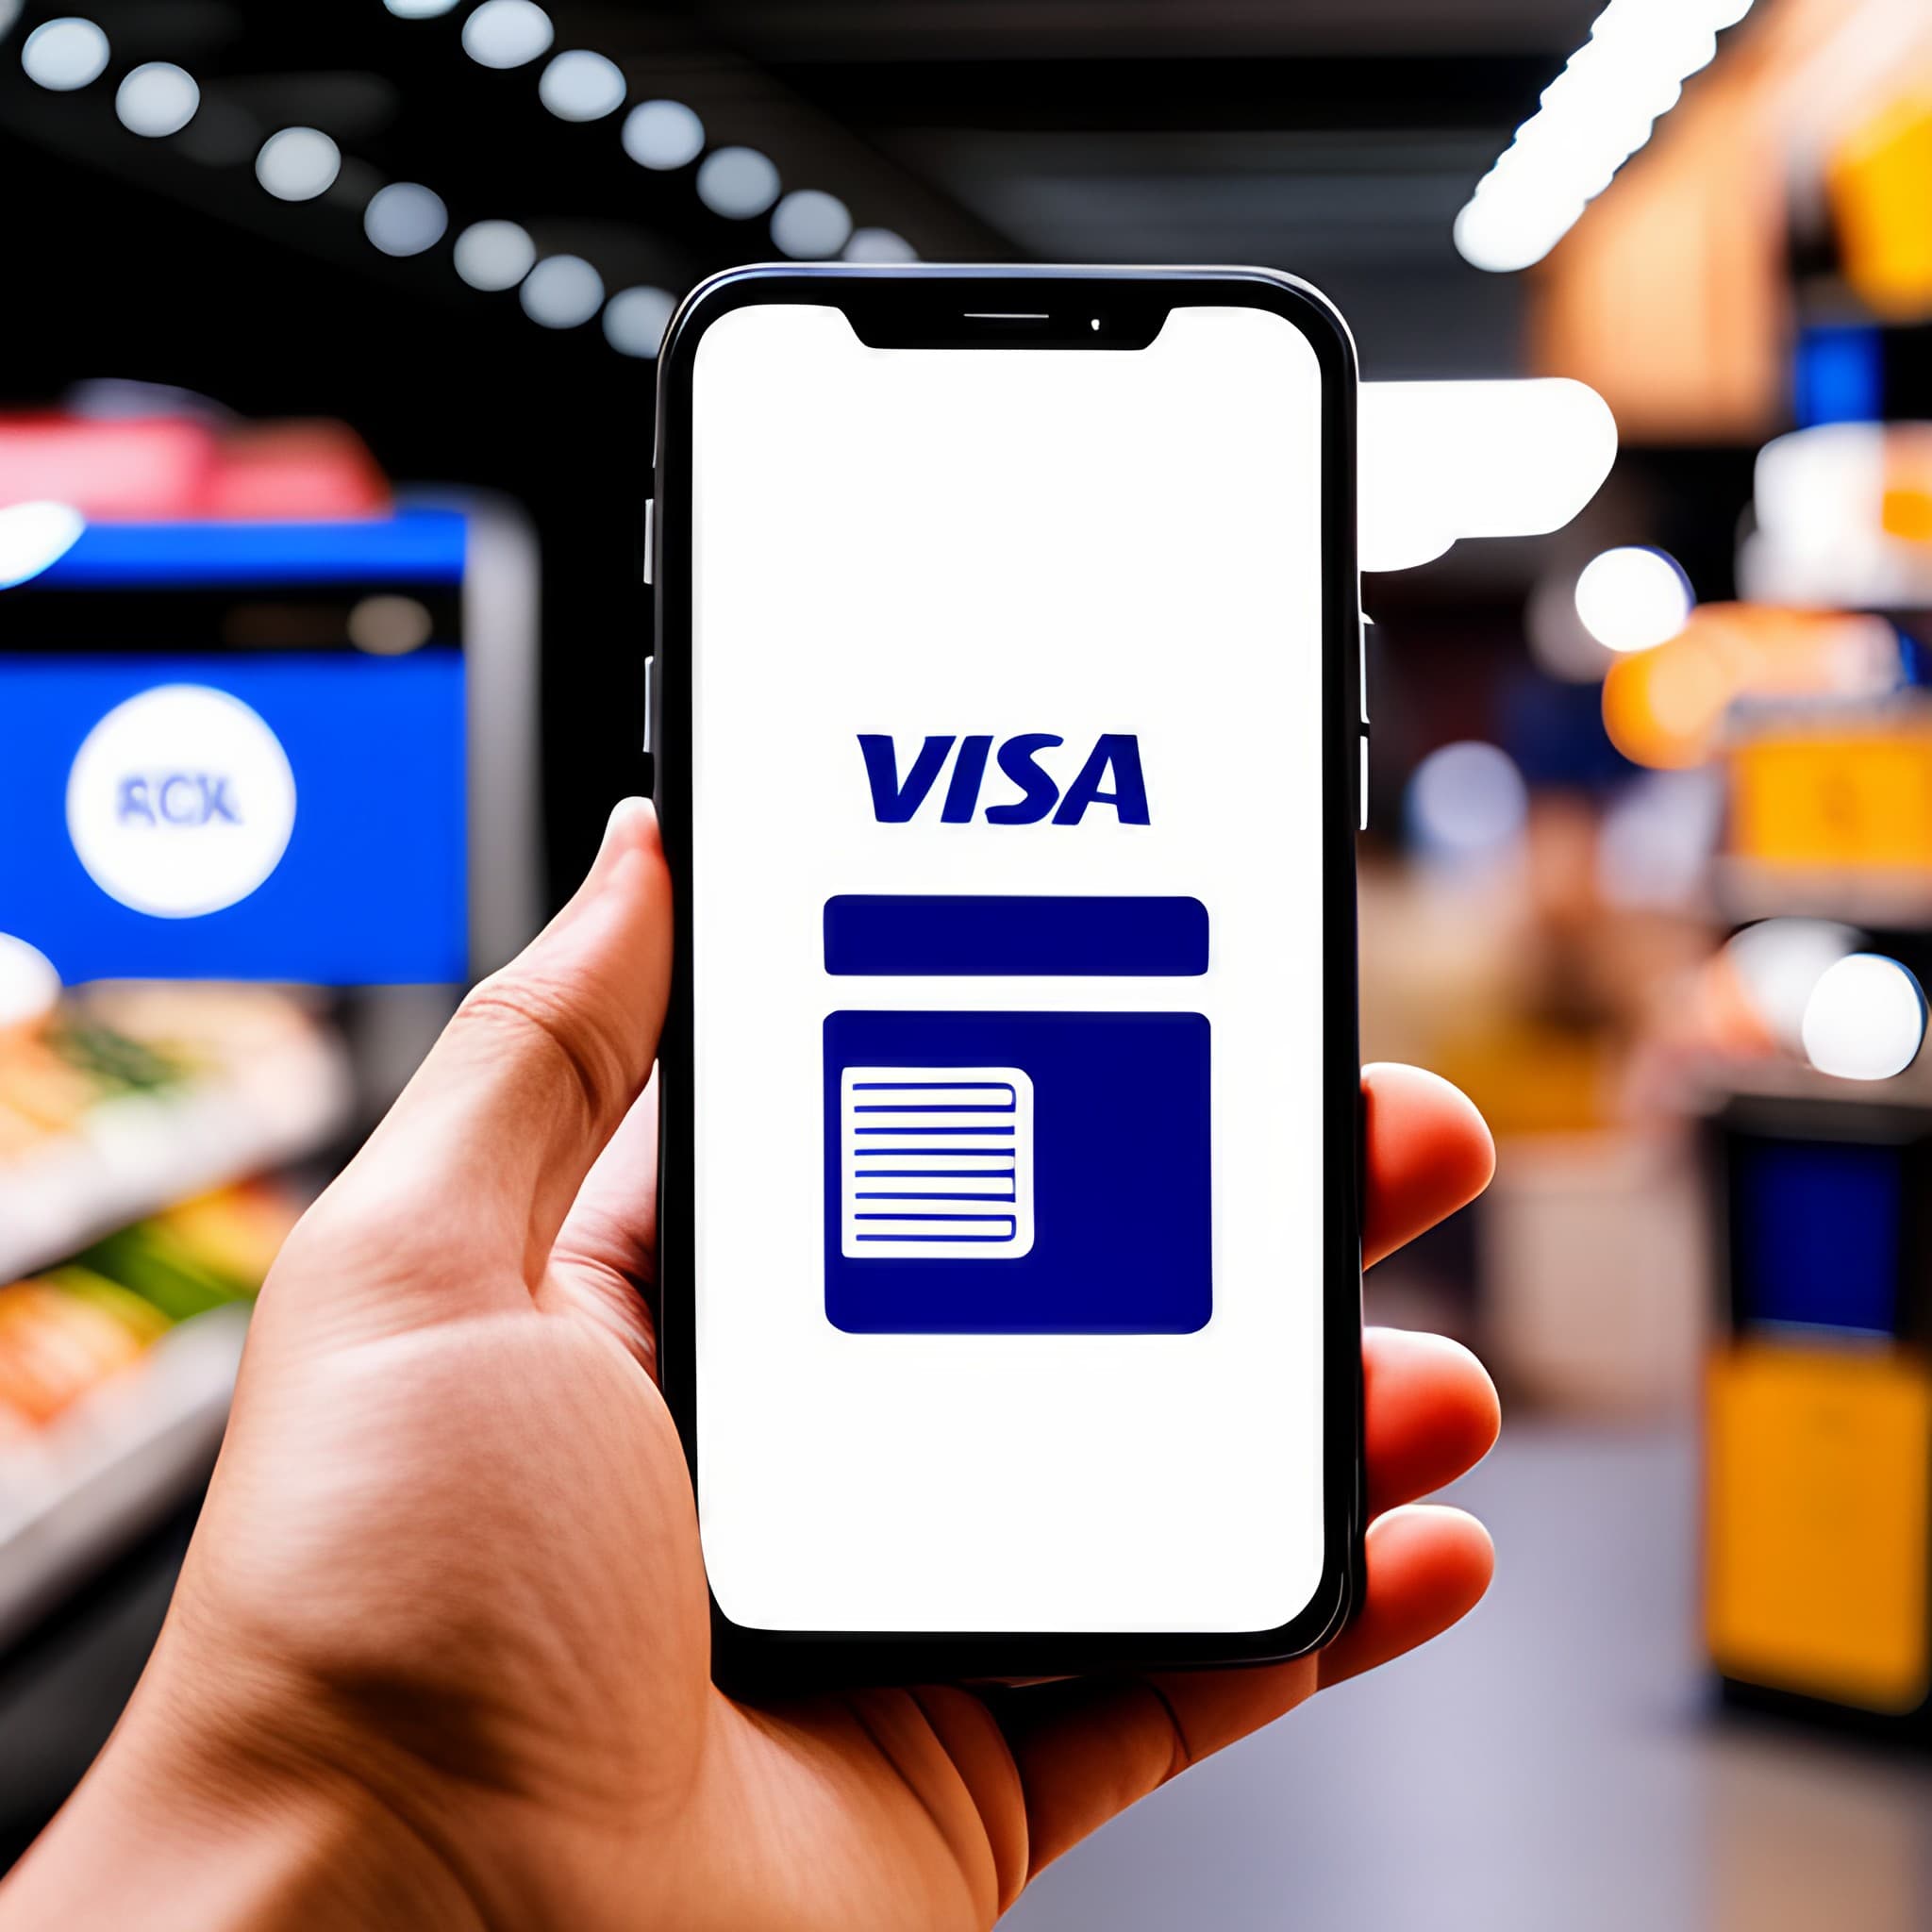 Digital Wallet Magic: Visa Digital Wallet Solutions